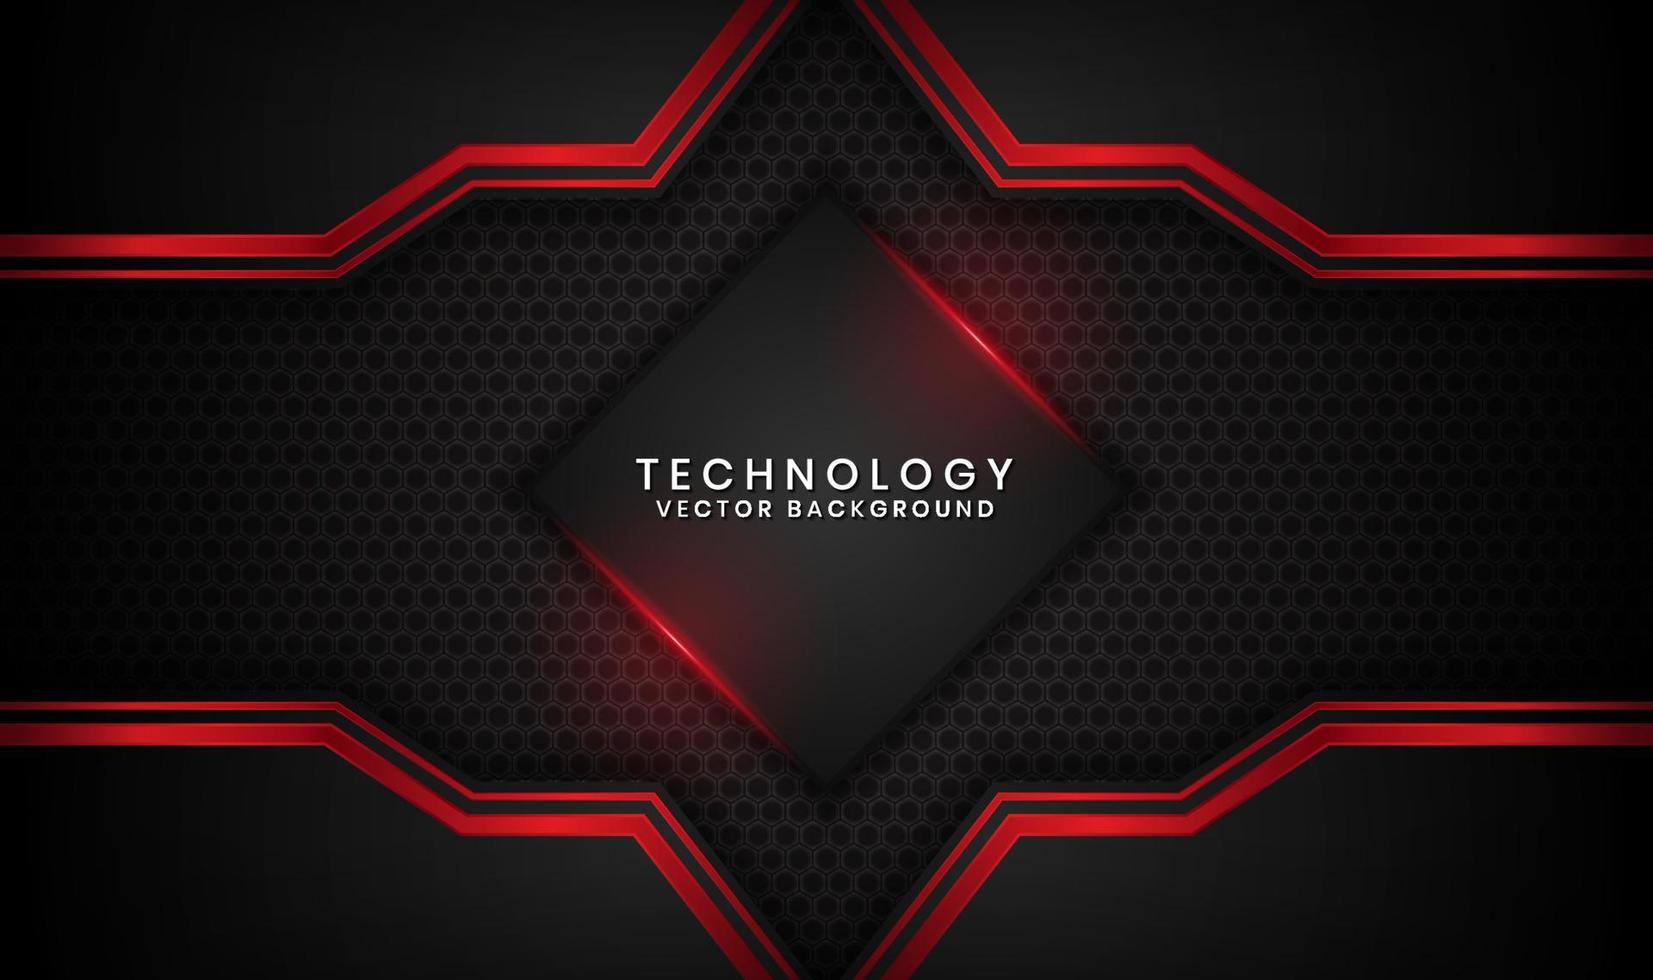 3D svart teknologi abstrakt bakgrund överlappande lager på mörkt utrymme med röd ljus linje effekt dekoration. grafiskt designelement framtida stilkoncept för flygblad, banner, broschyr eller målsida vektor